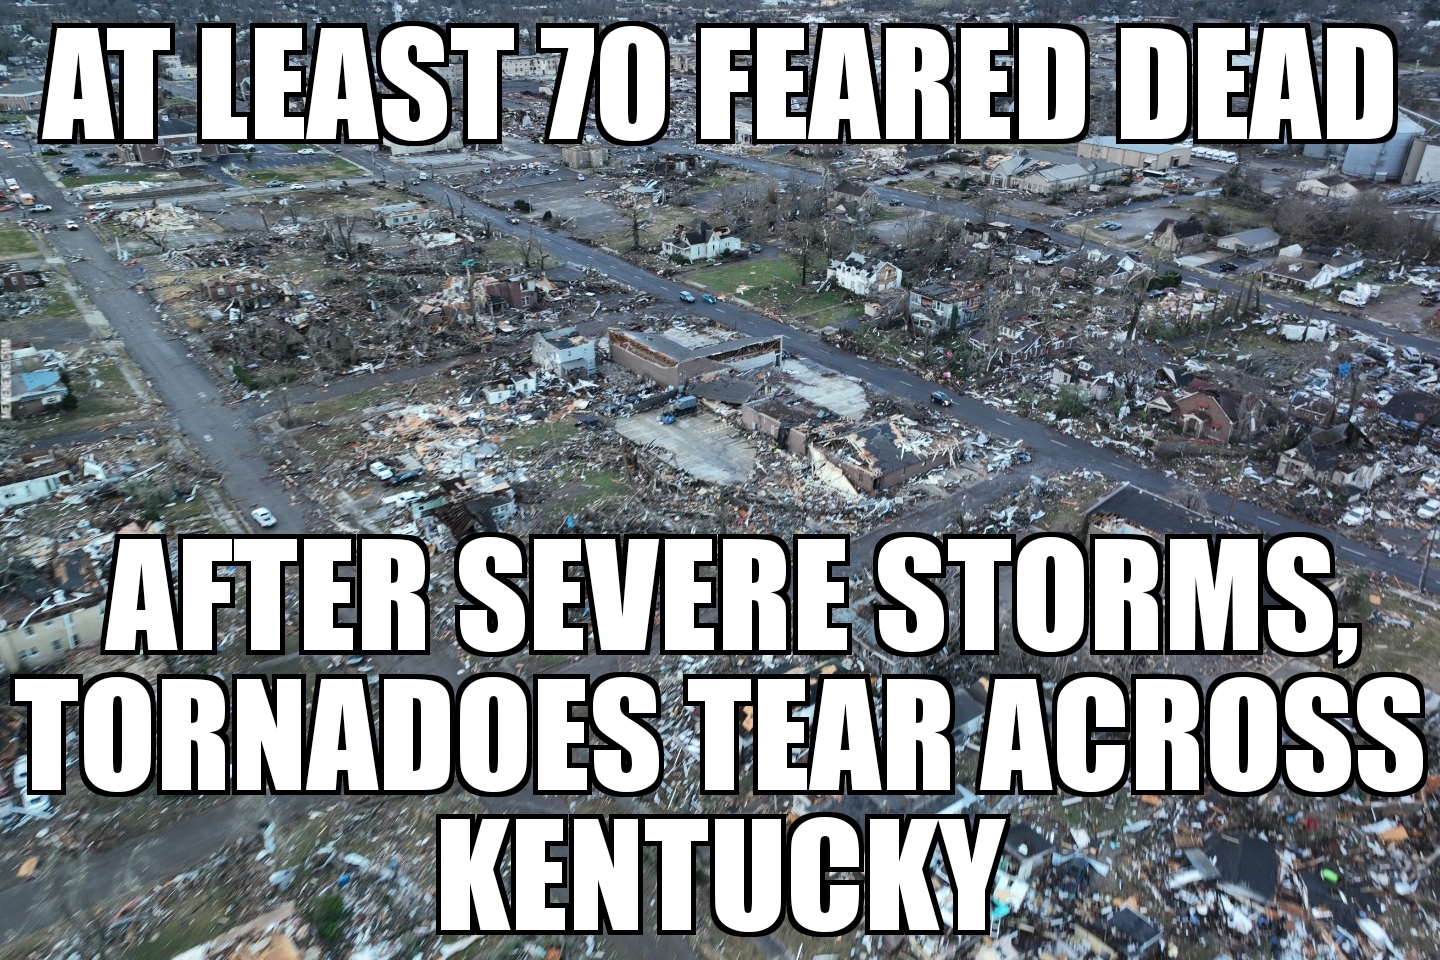 Kentucky tornadoes